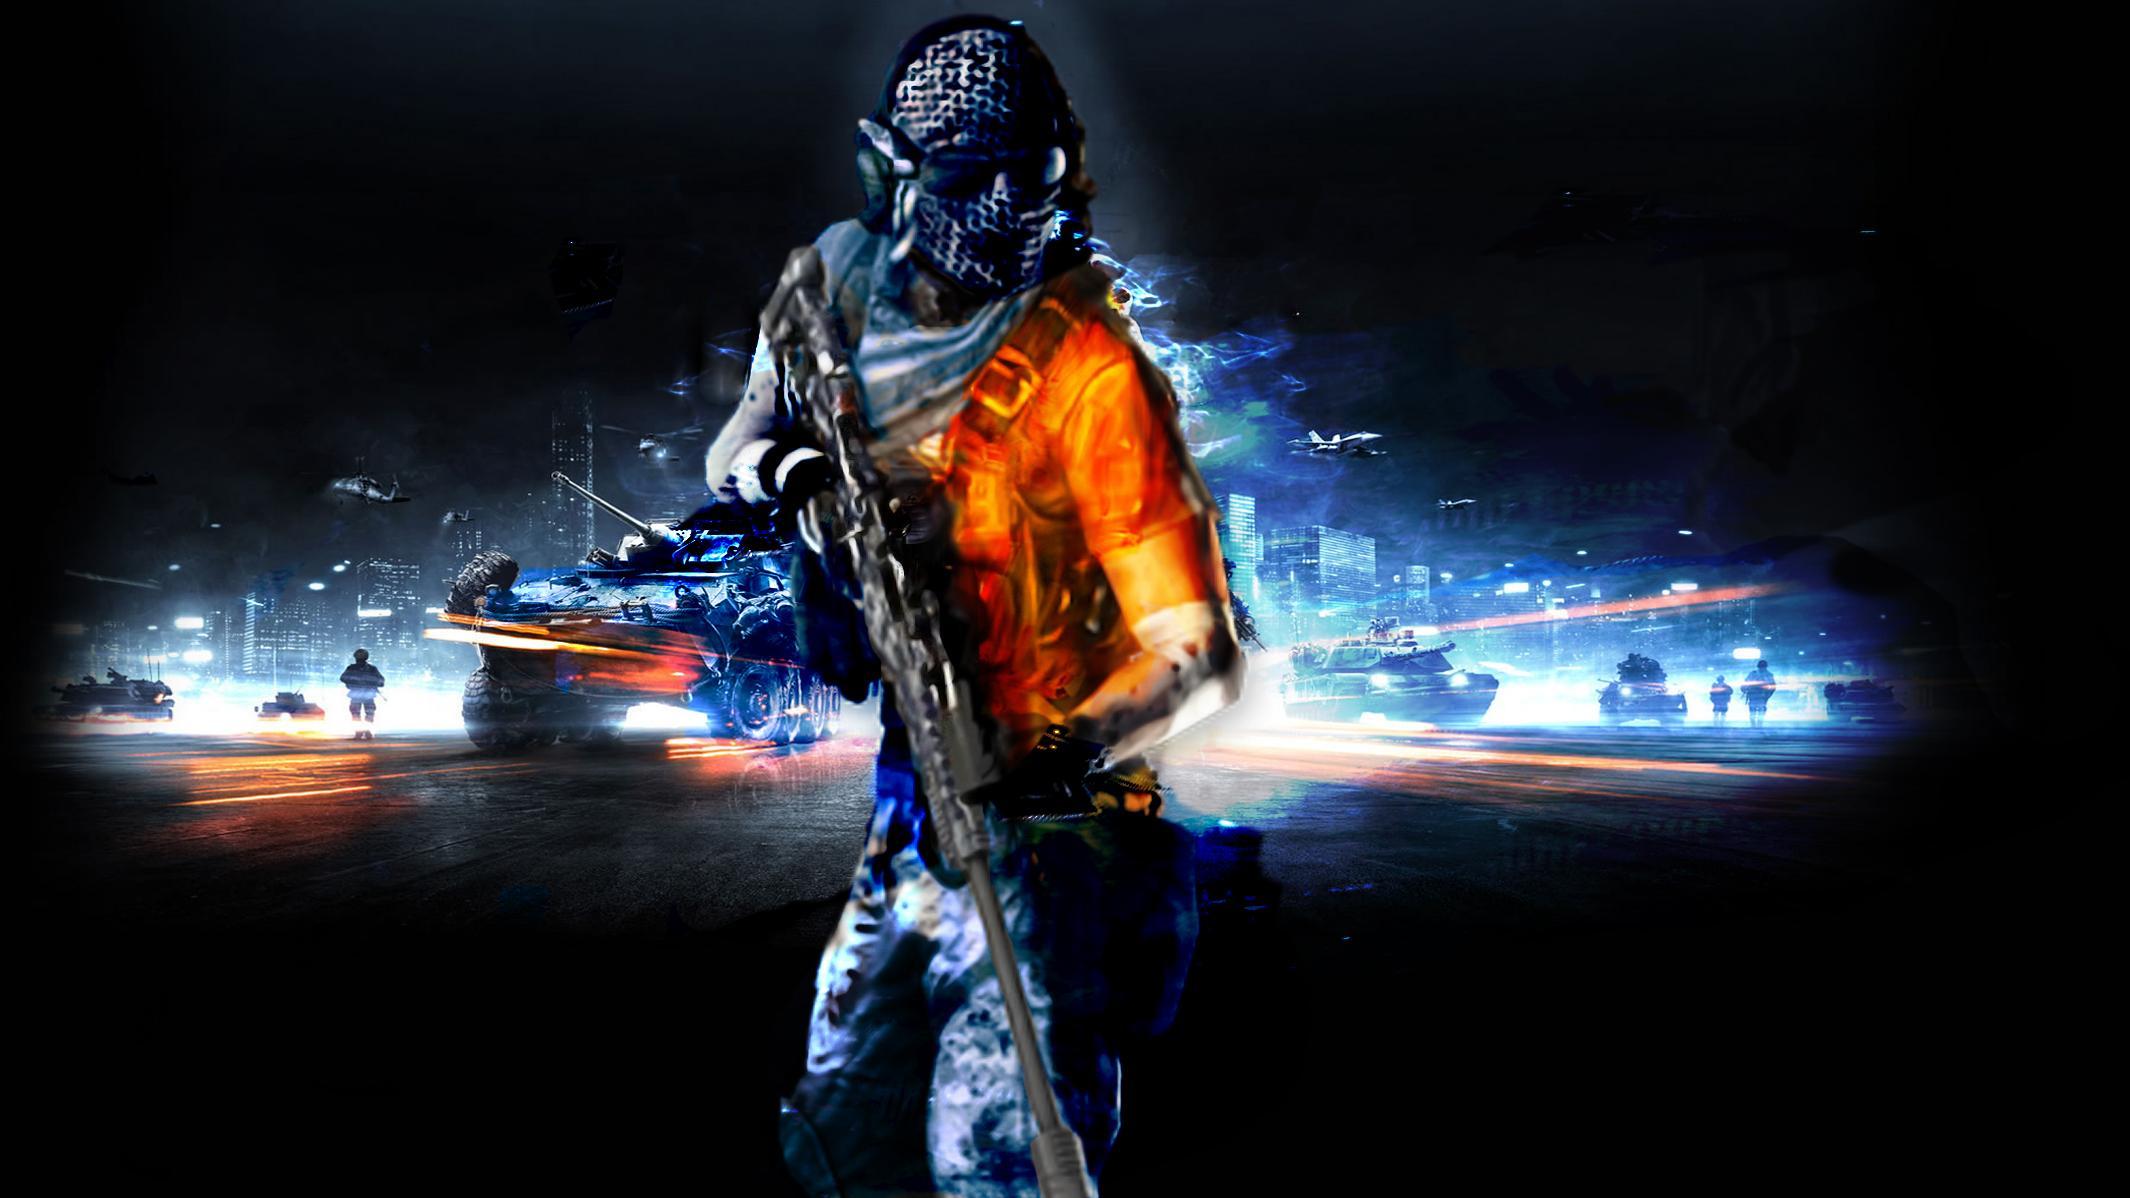 Battlefield 3 The Sniper - Battlefield 3 Wallpaper Hd , HD Wallpaper & Backgrounds